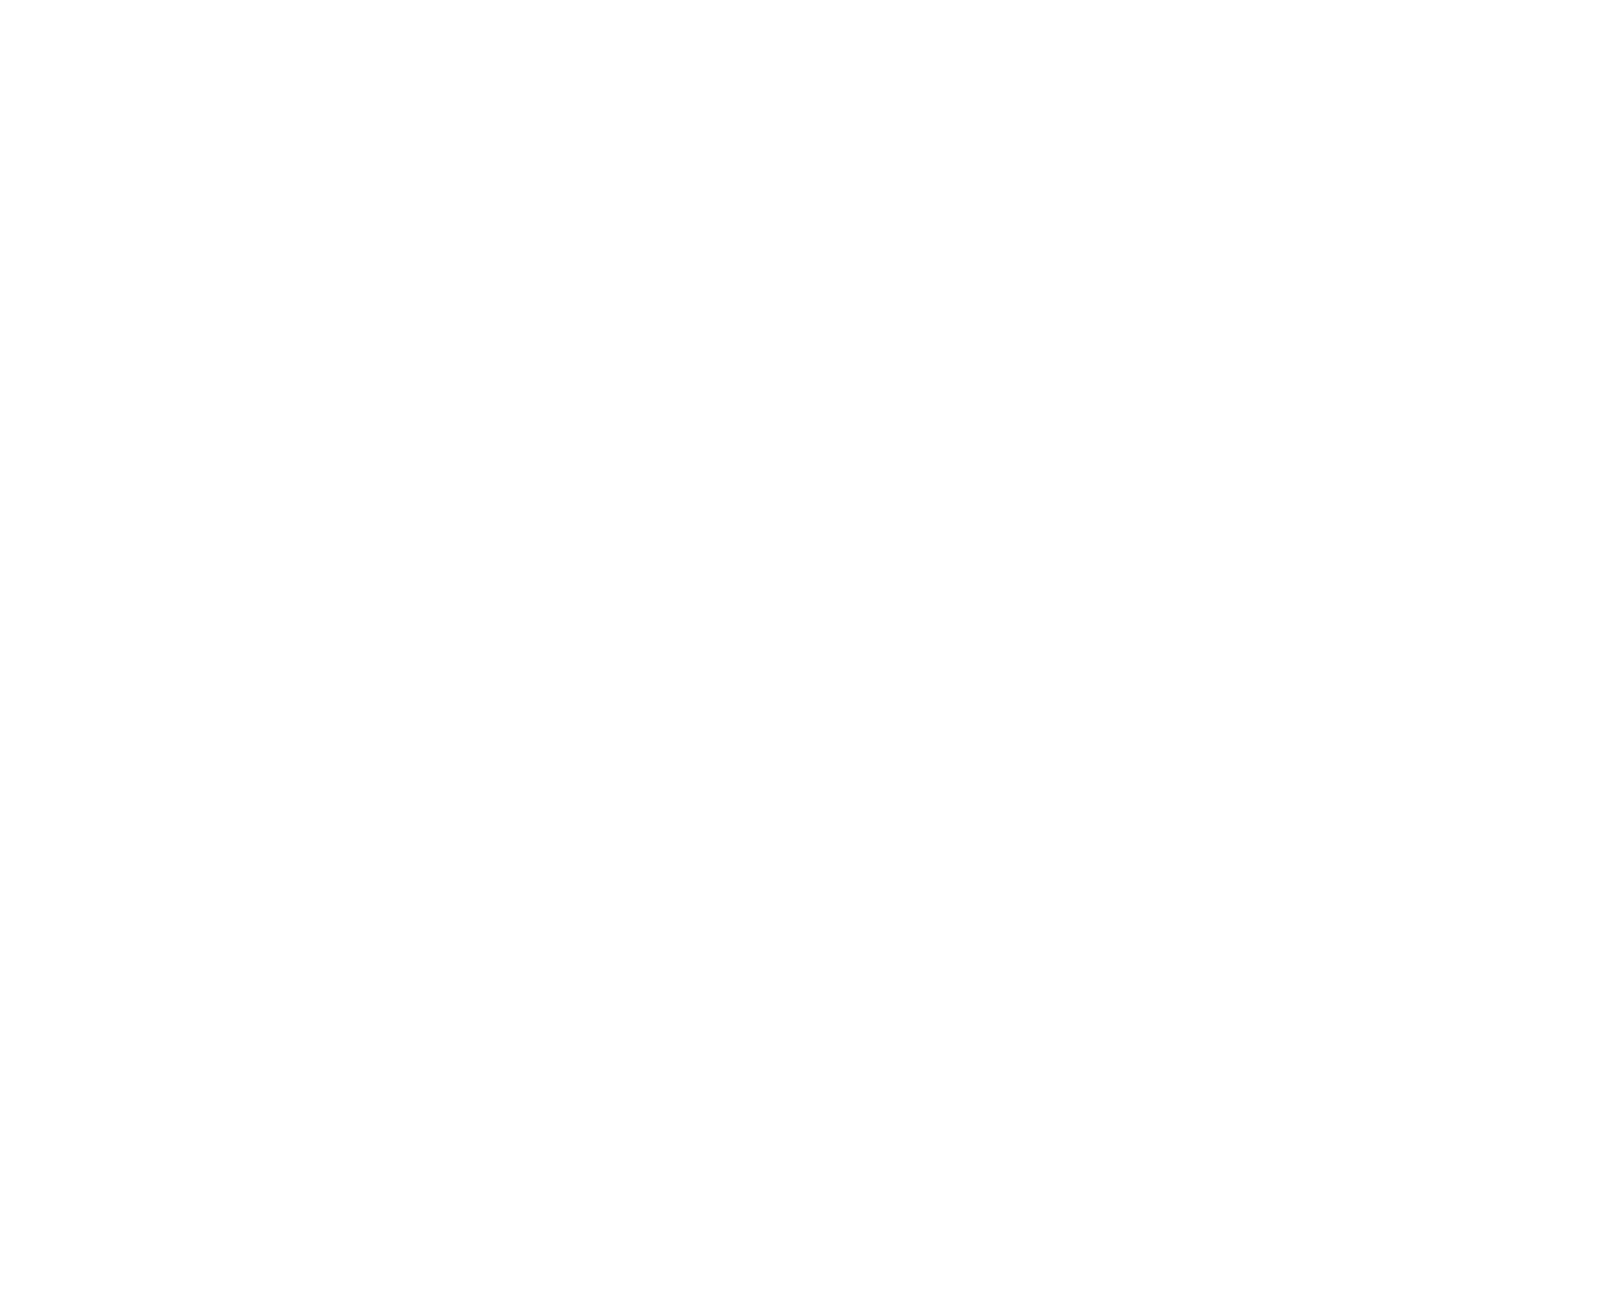 stadthotel-hamburg-logo-referenz